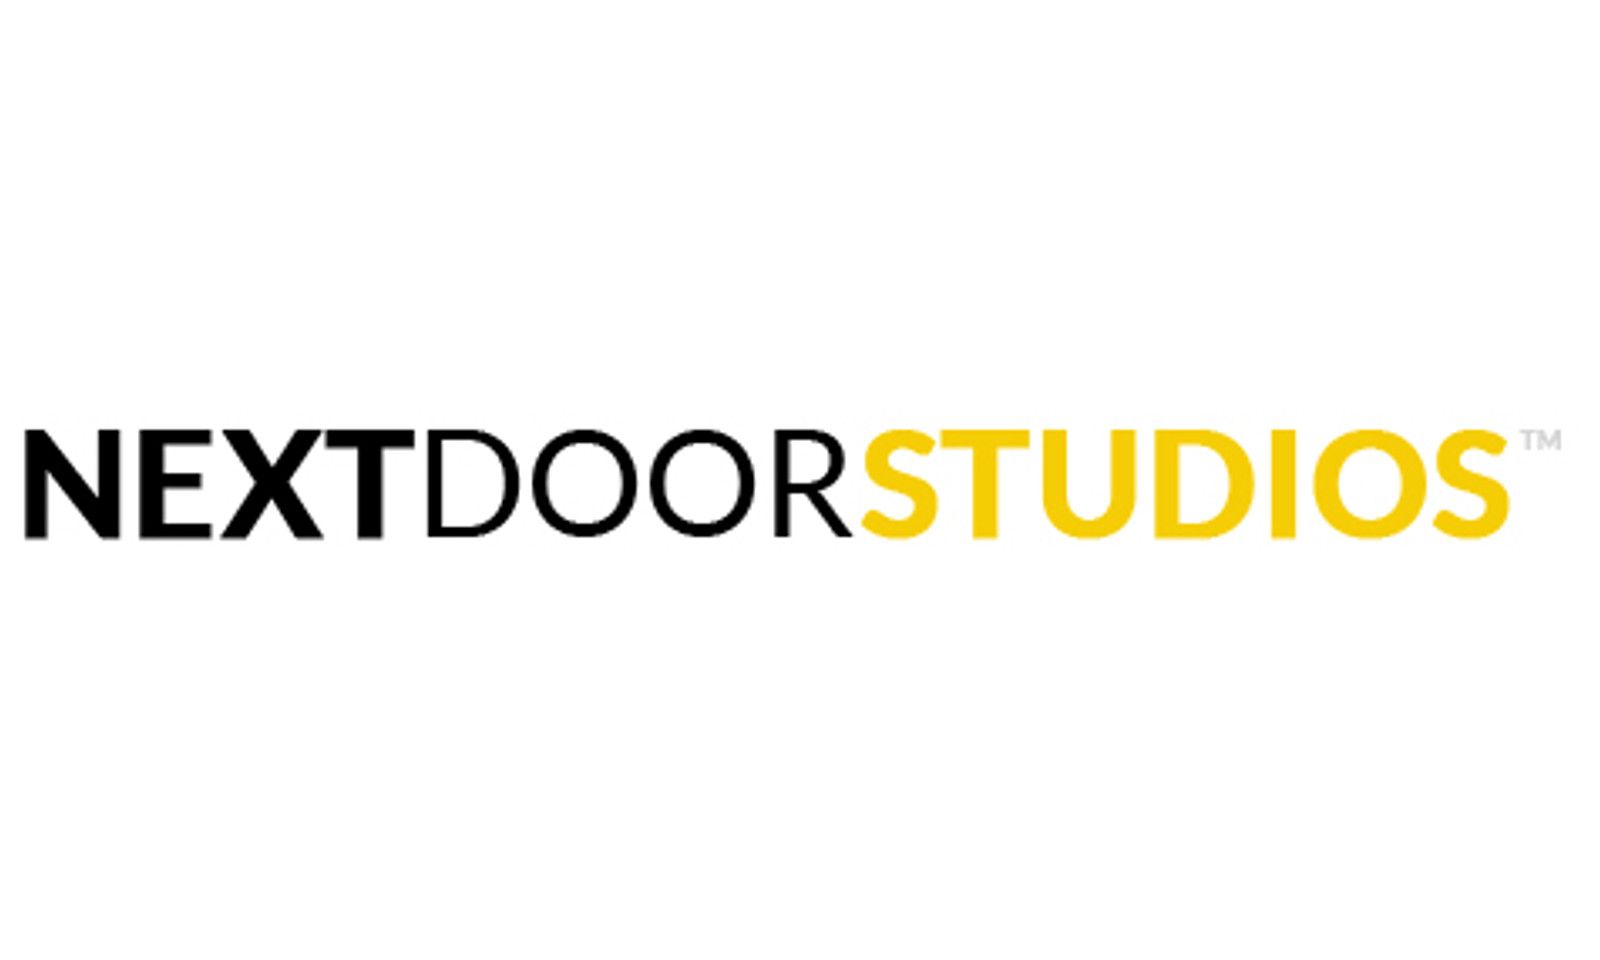 Next Door Studios Founder Stephan Sirard Retires